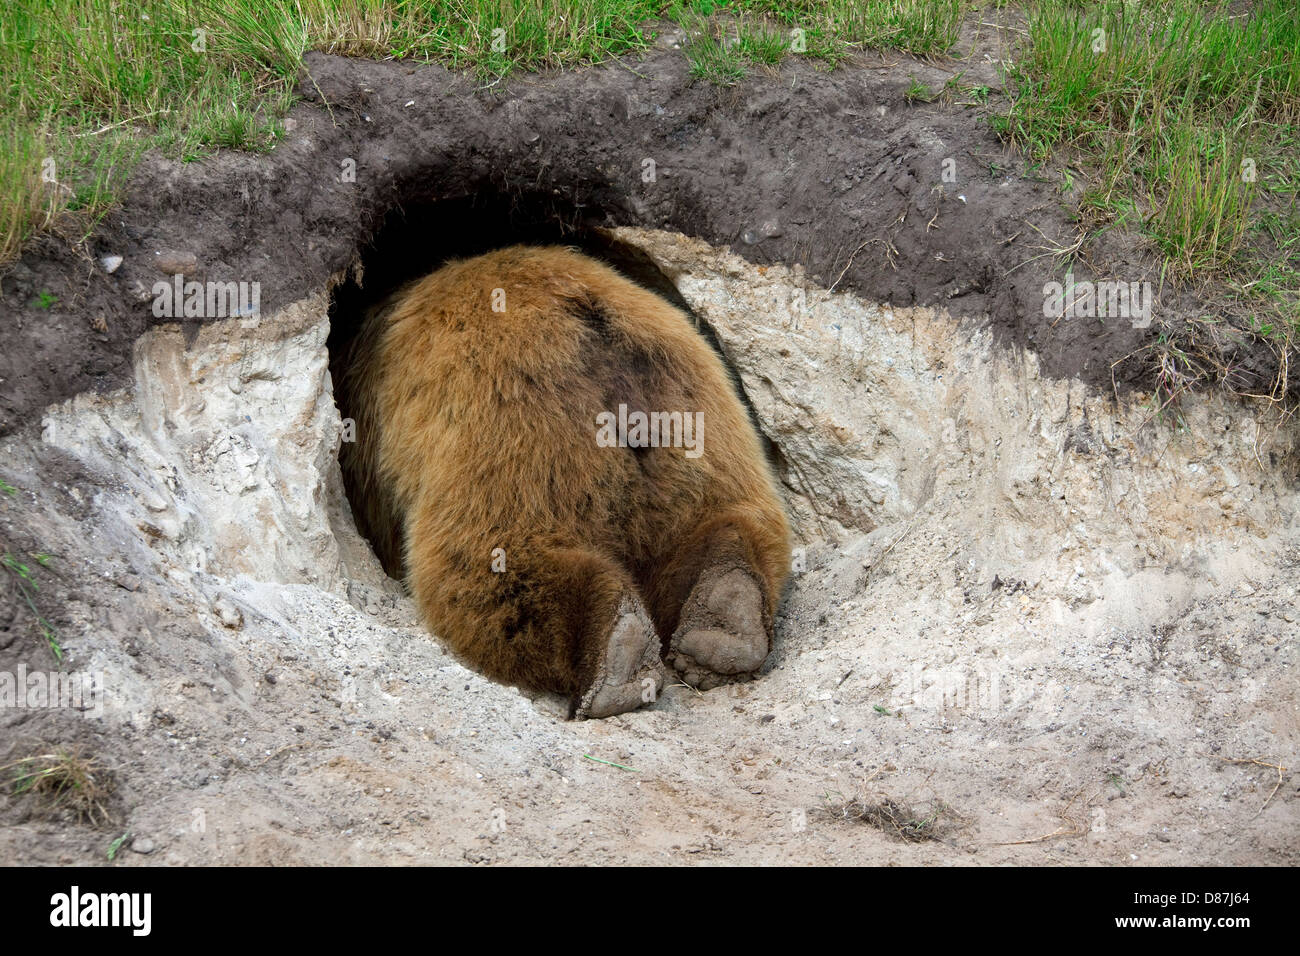 L'ours brun (Ursus arctos arctos) entre dans sa tanière, Suède Banque D'Images